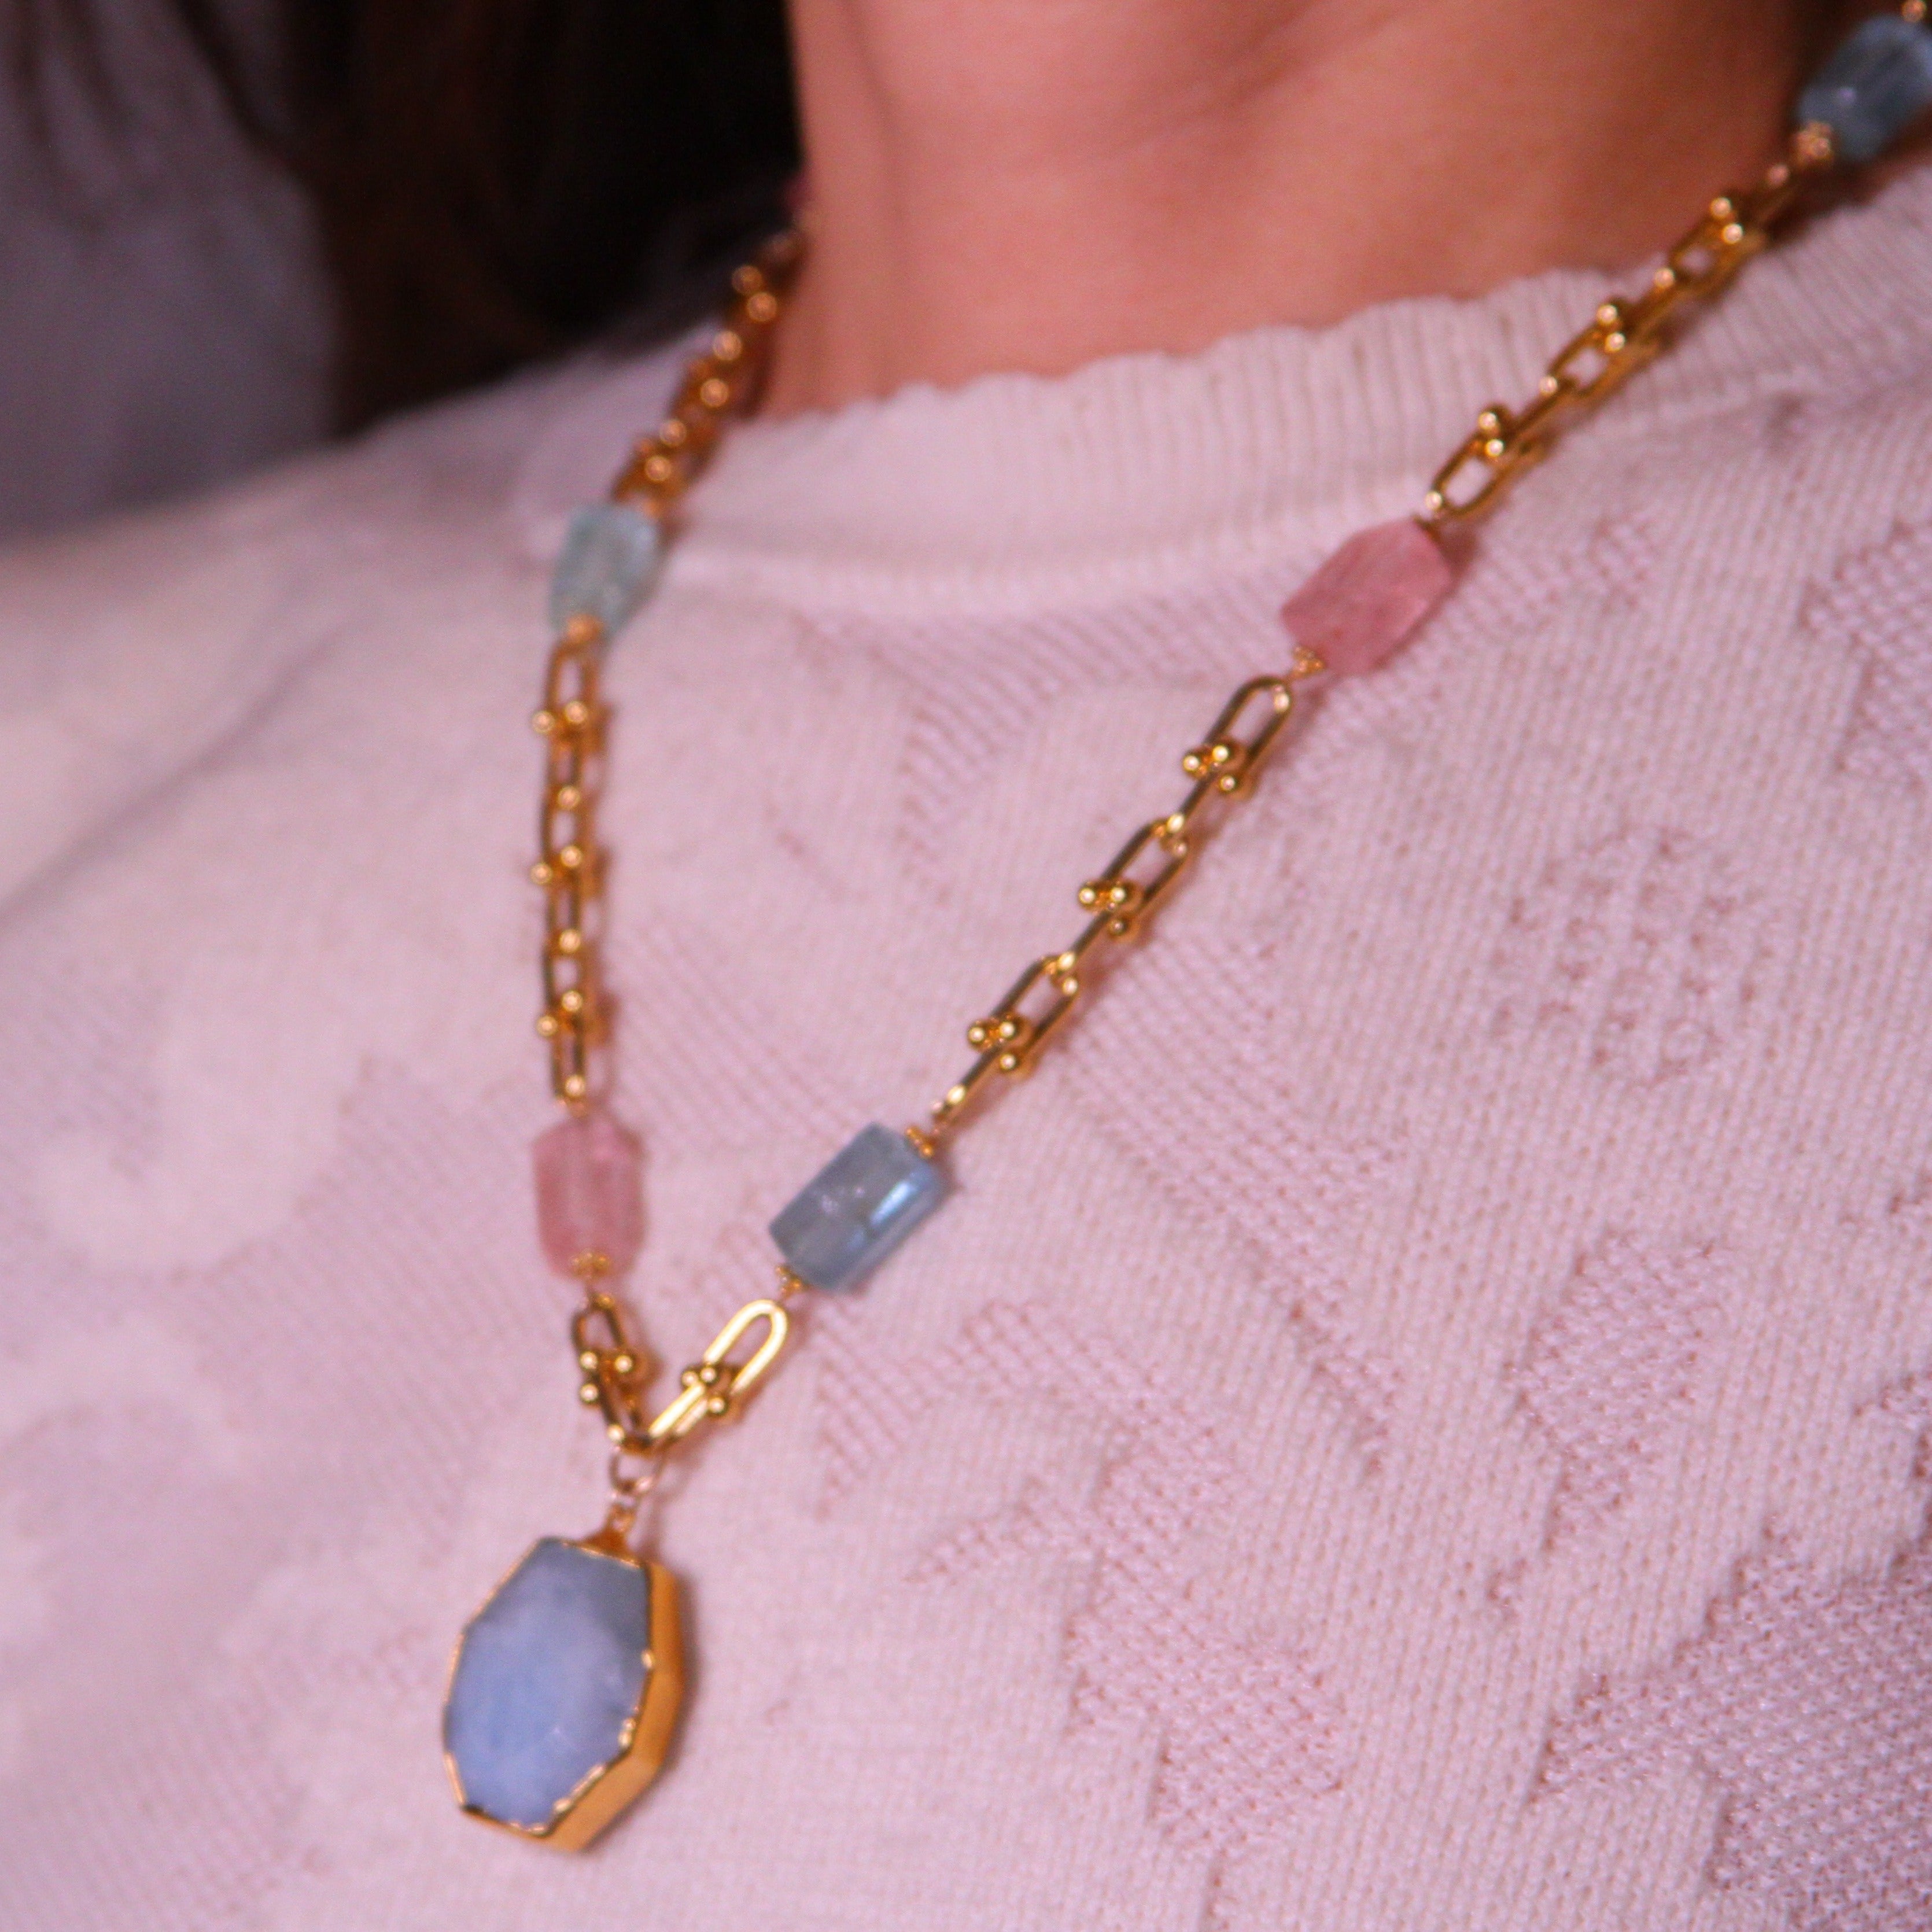 Emma Rainbow Aquamarine Necklace With Pendant